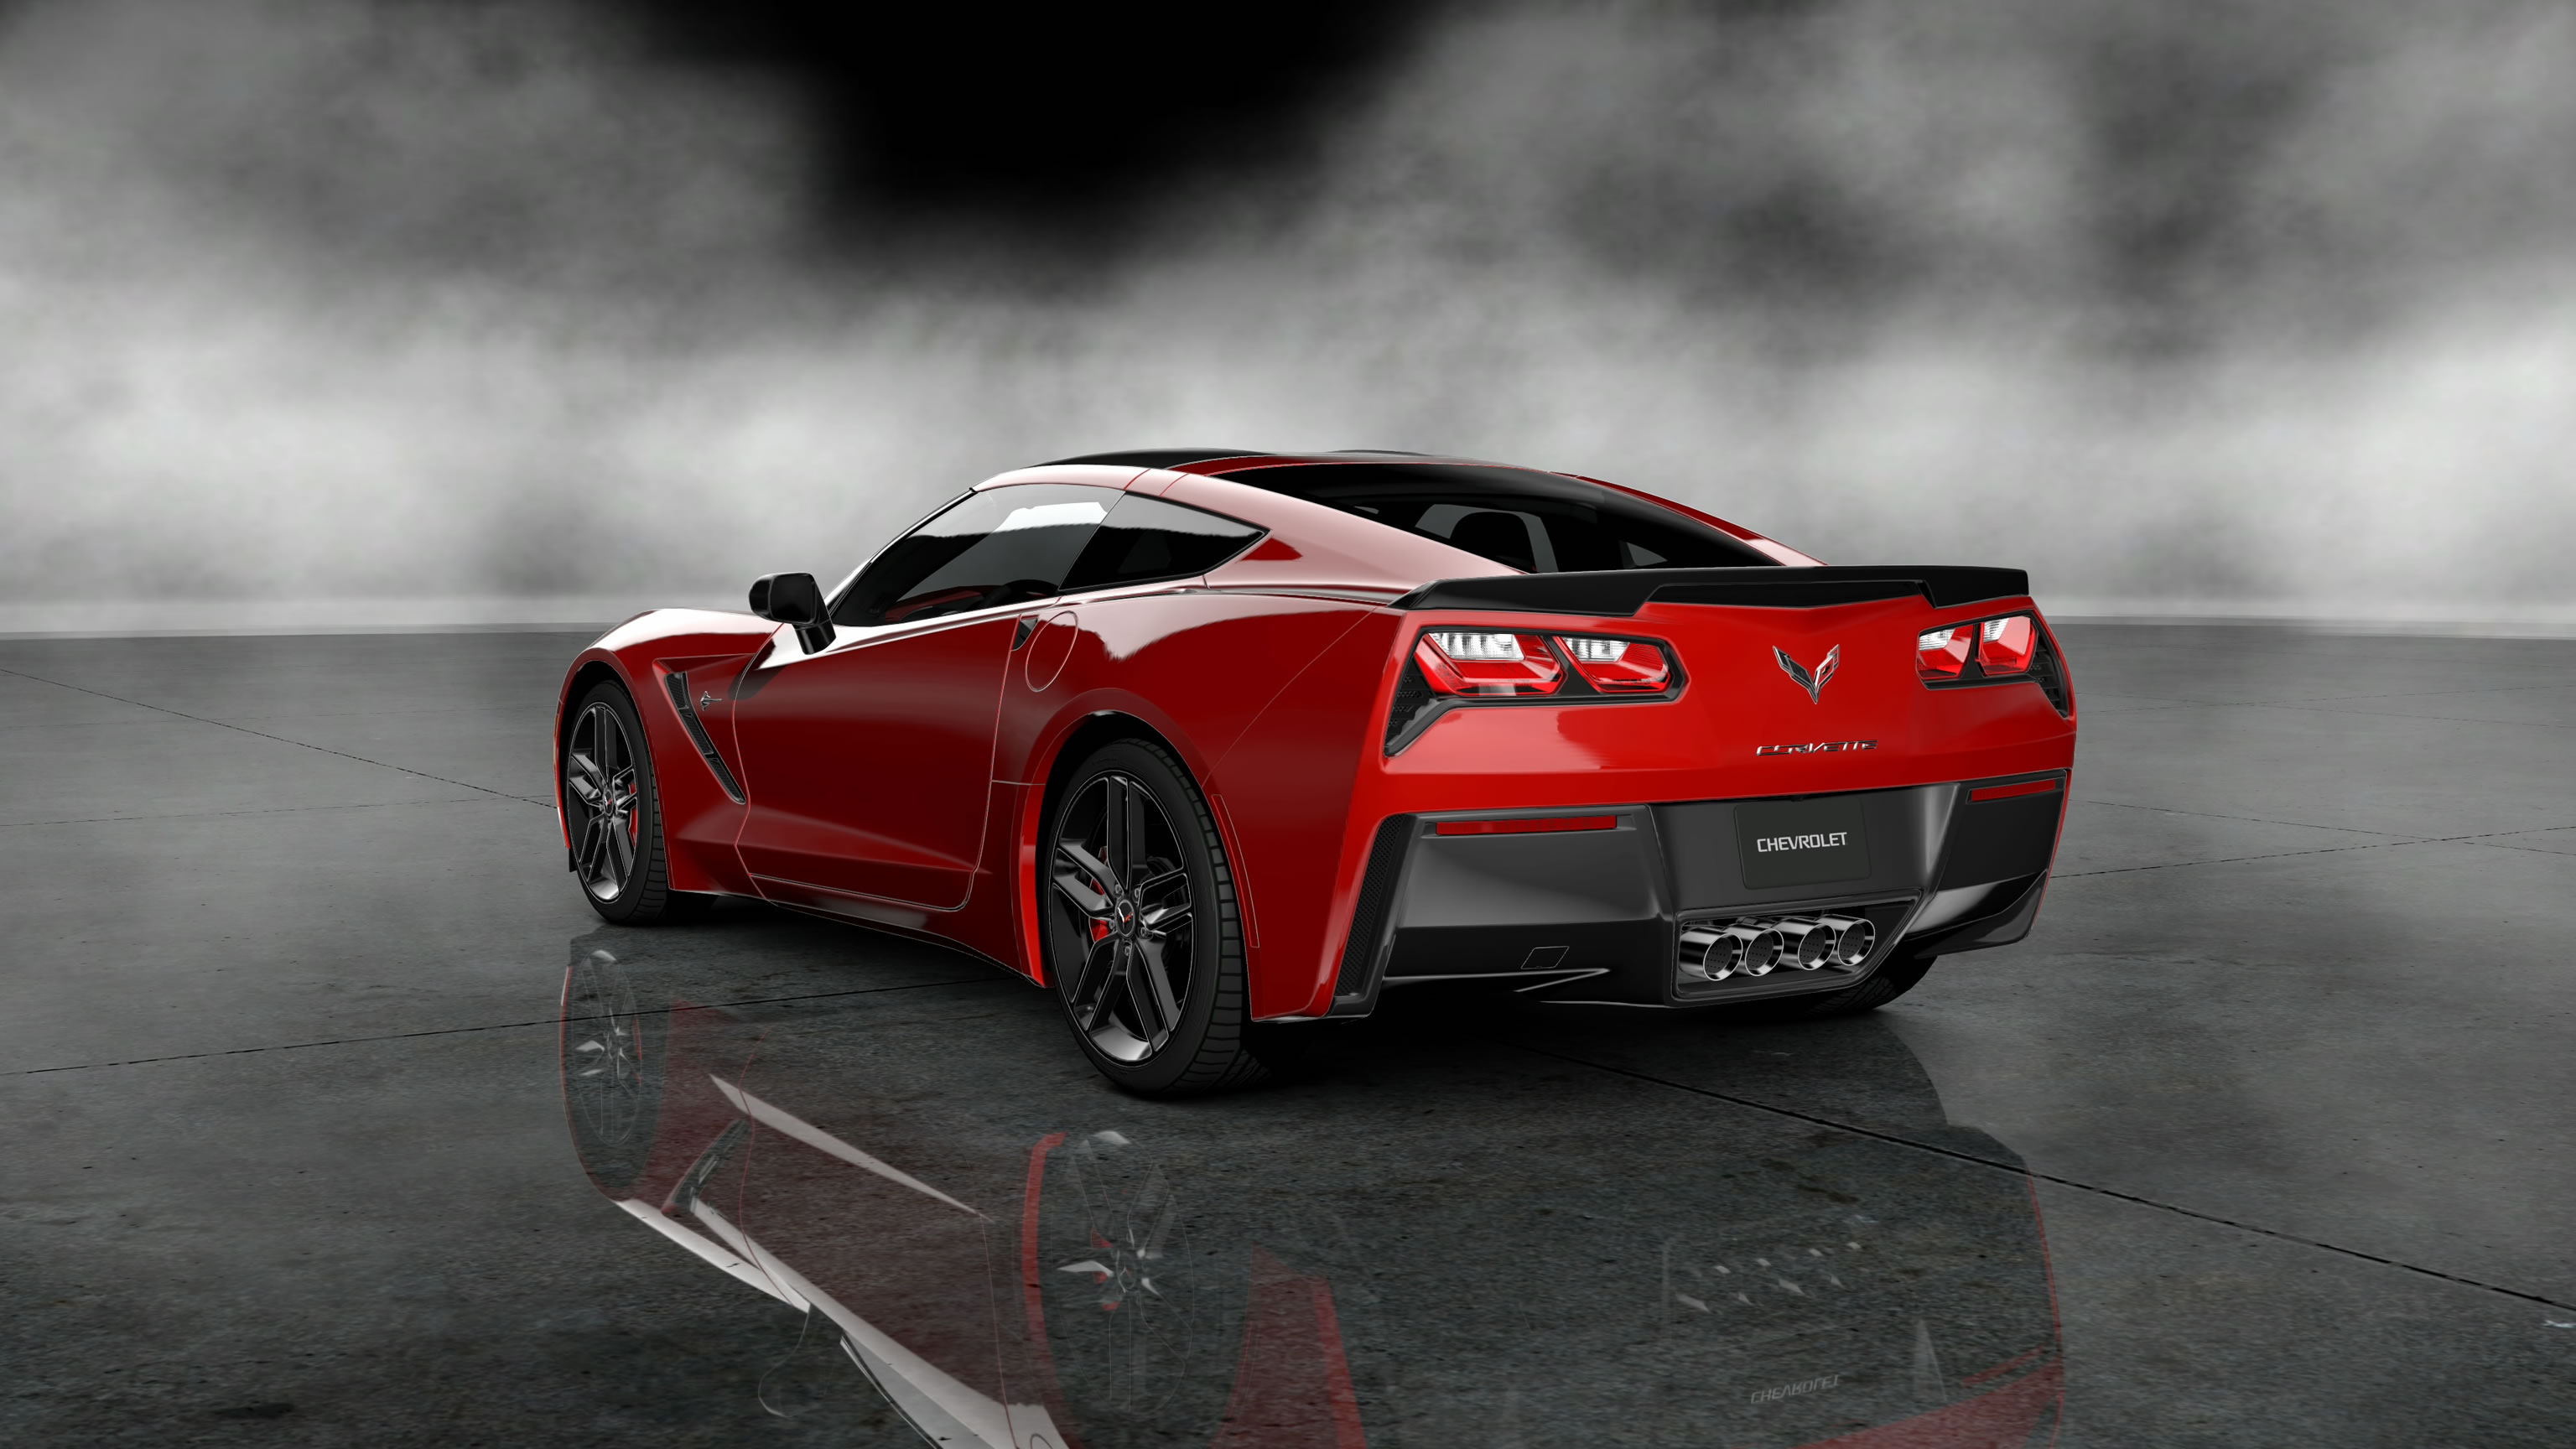 C7 Wallpaper Corvette Chevrolet Corvette C7 Sting Hd - Hd Corvette C7 Red , HD Wallpaper & Backgrounds